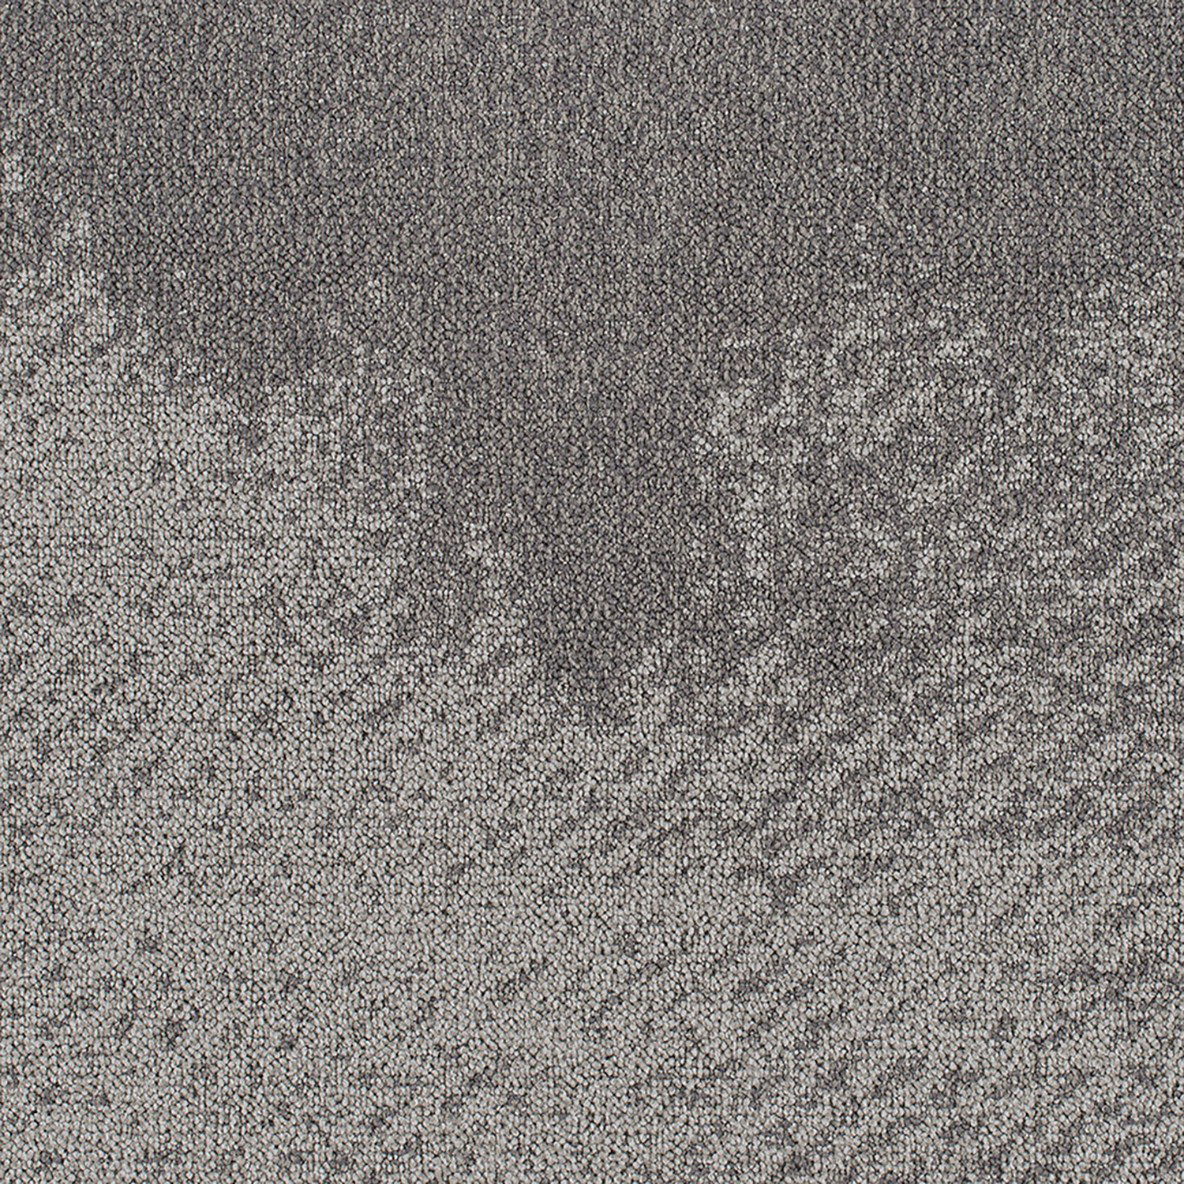 Color graphite close up Burnished Commercial Carpet Tile .325 Inch x 50x50 cm Per Tile